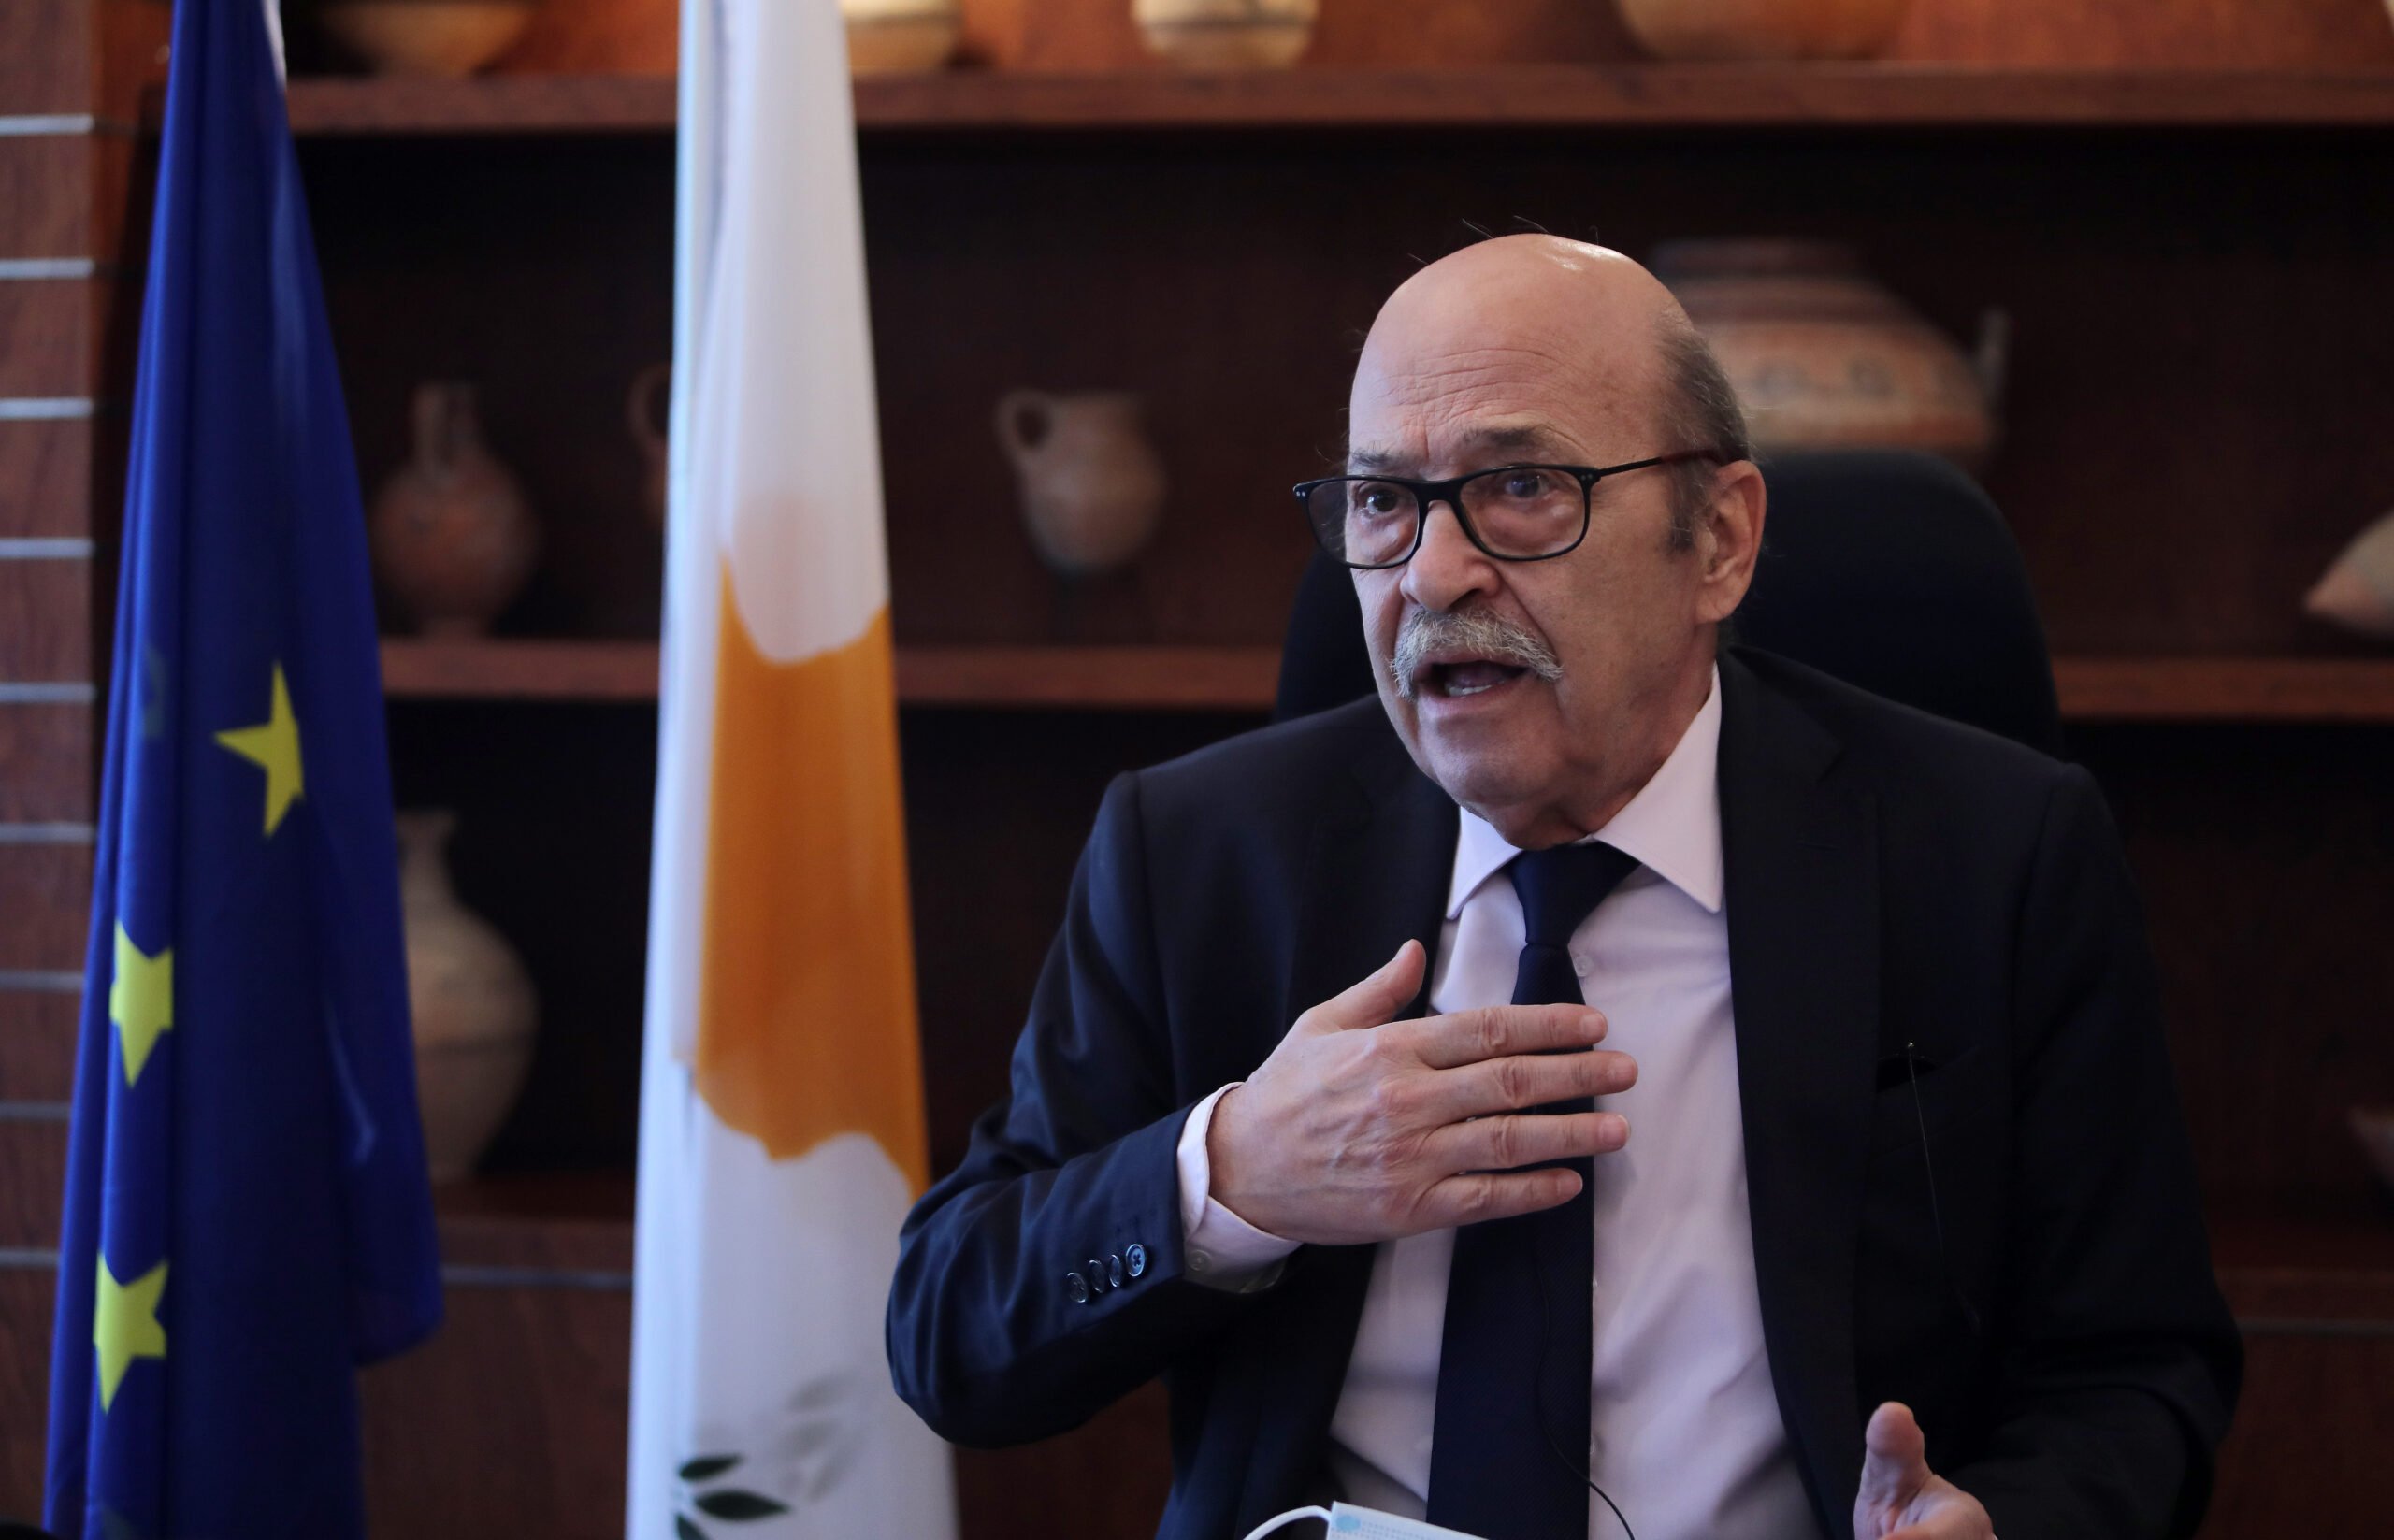 Το Κοινοβούλιο πρέπει να «αυξήσει τα πρότυπα του», λέει ο Πρόεδρος της Βουλής στο CNA